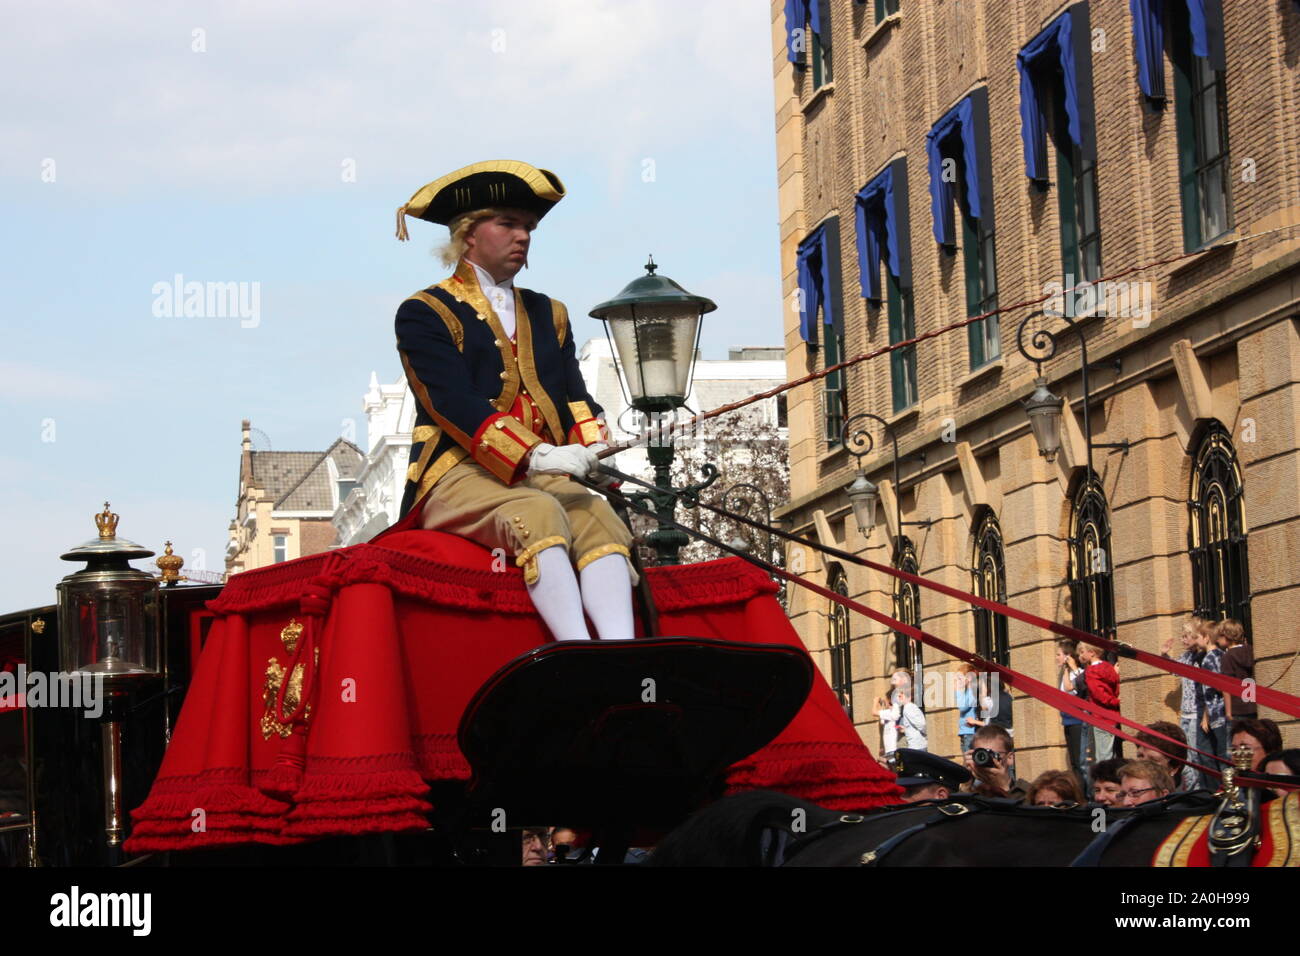 Der Fahrer fuhr auf der goldenen Kutsche mit der Königlichen Familie auf dem Weg in die Halle der Ritter in Den Haag Prinsjesdag jährliche Zeremonie. Stockfoto